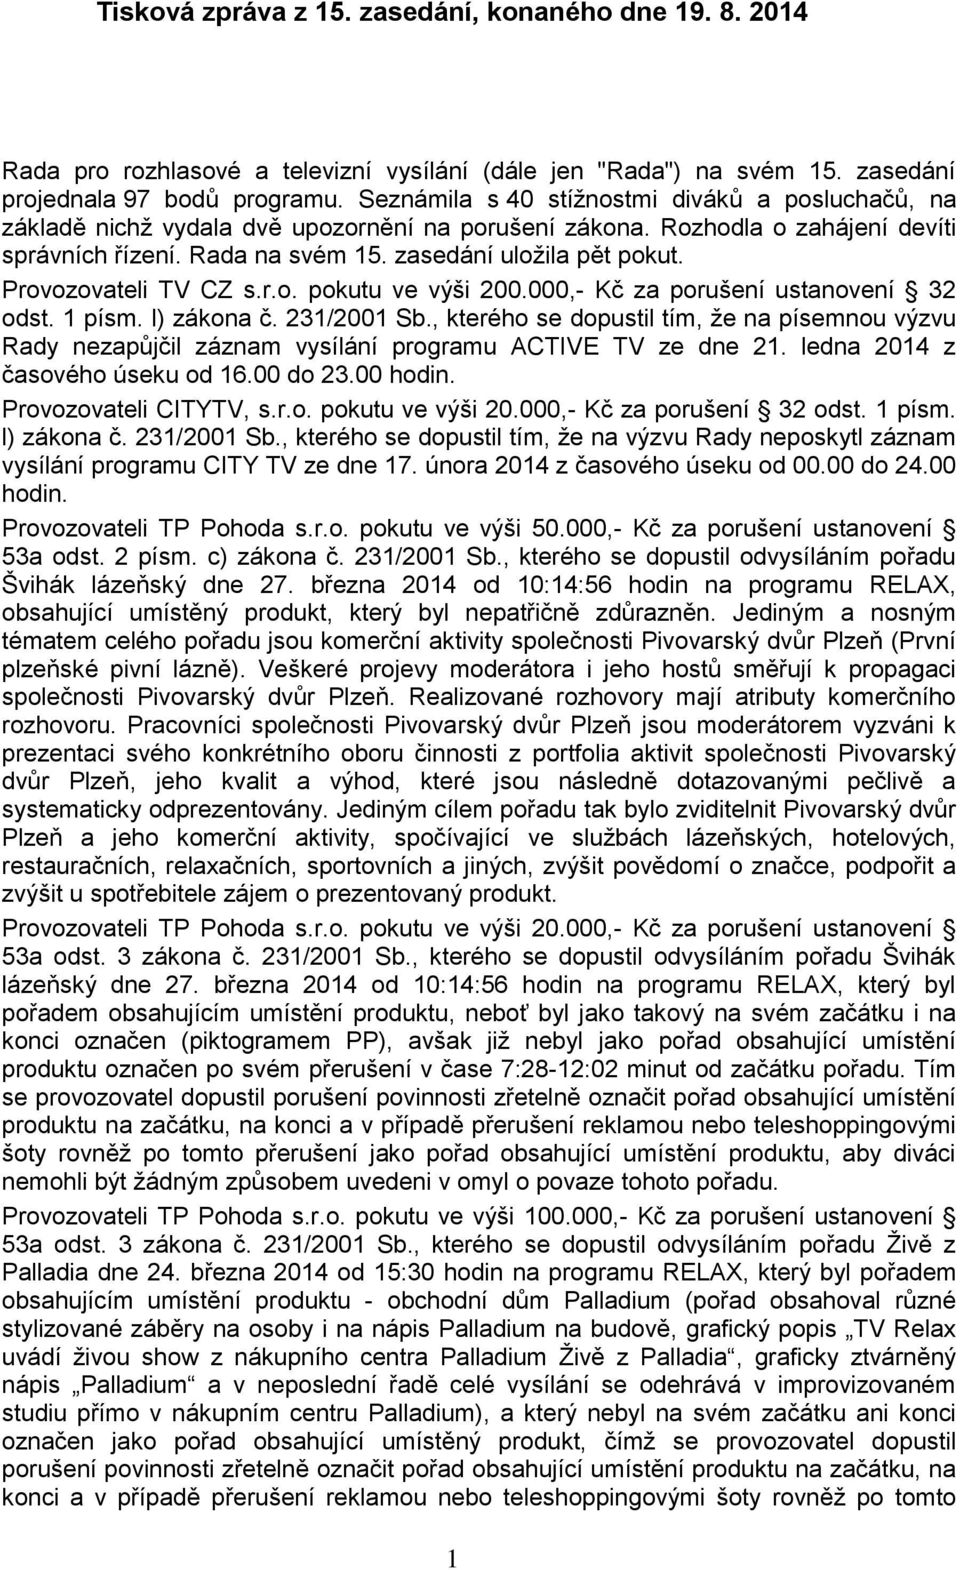 Provozovateli TV CZ s.r.o. pokutu ve výši 200.000,- Kč za porušení ustanovení 32 odst. 1 písm. l) zákona č. 231/2001 Sb.